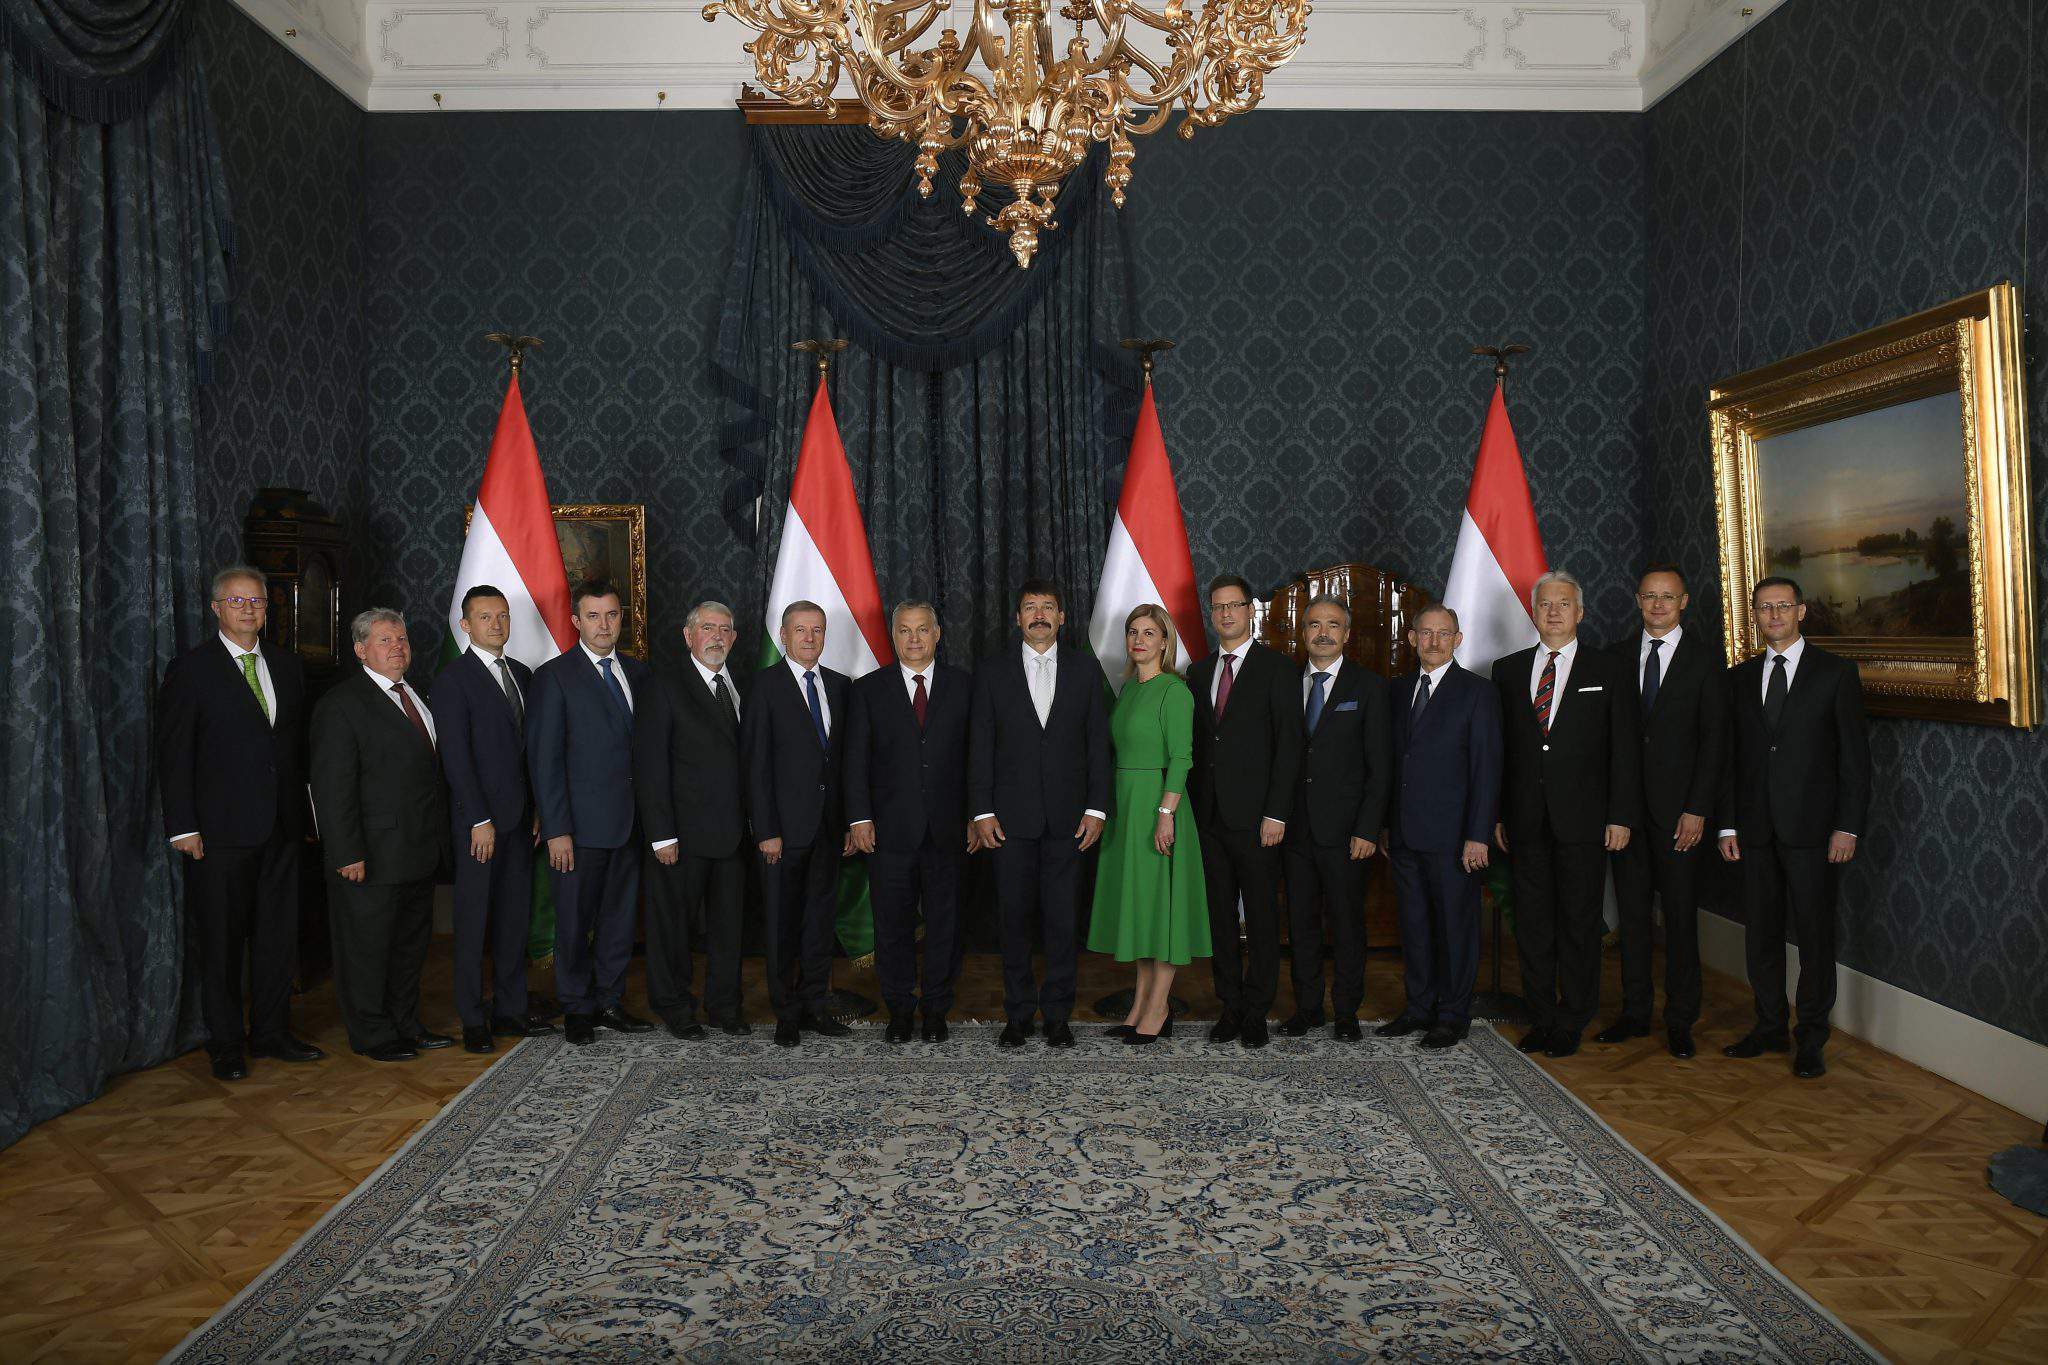 Kabinett Orbán der ungarischen Regierung